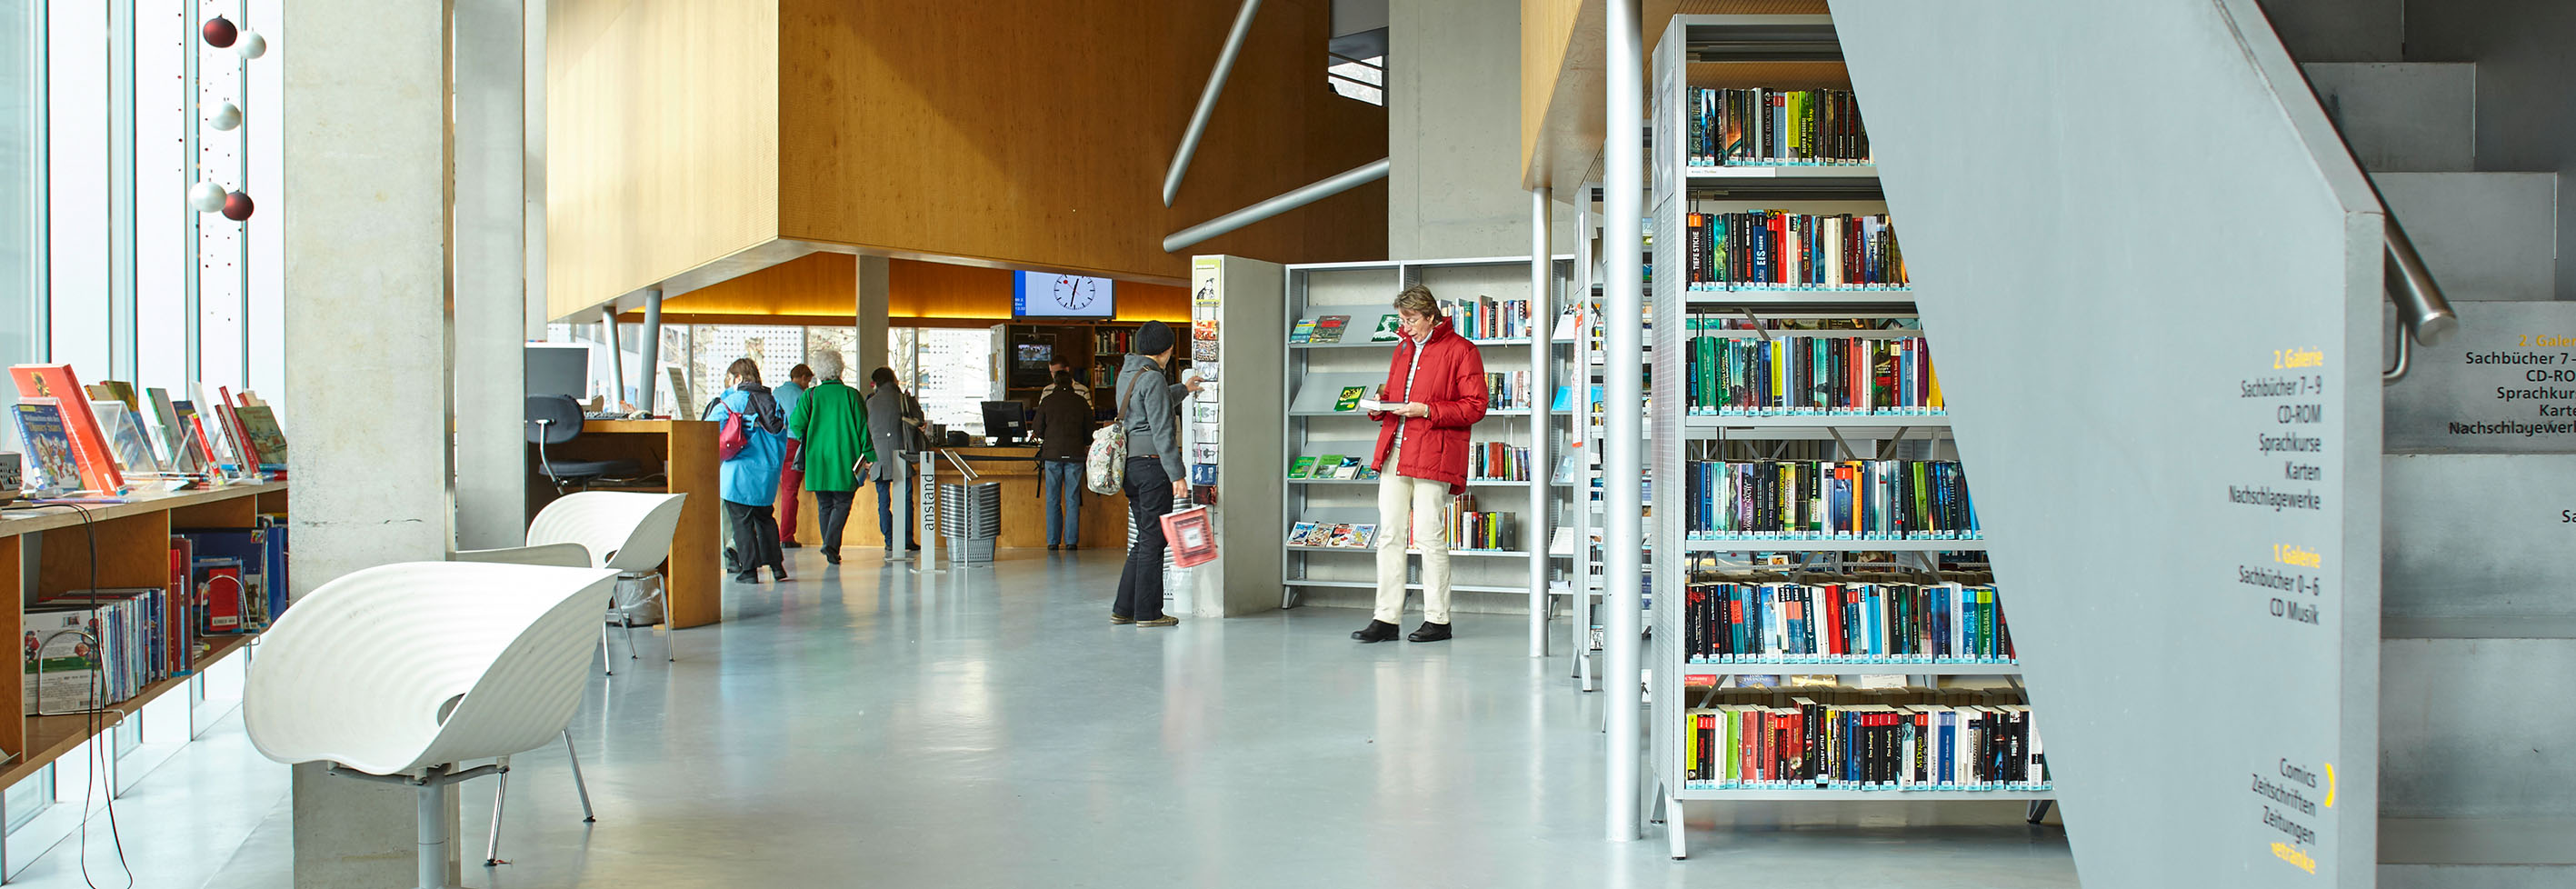 Stadtbibliothek sonntags geöffnet